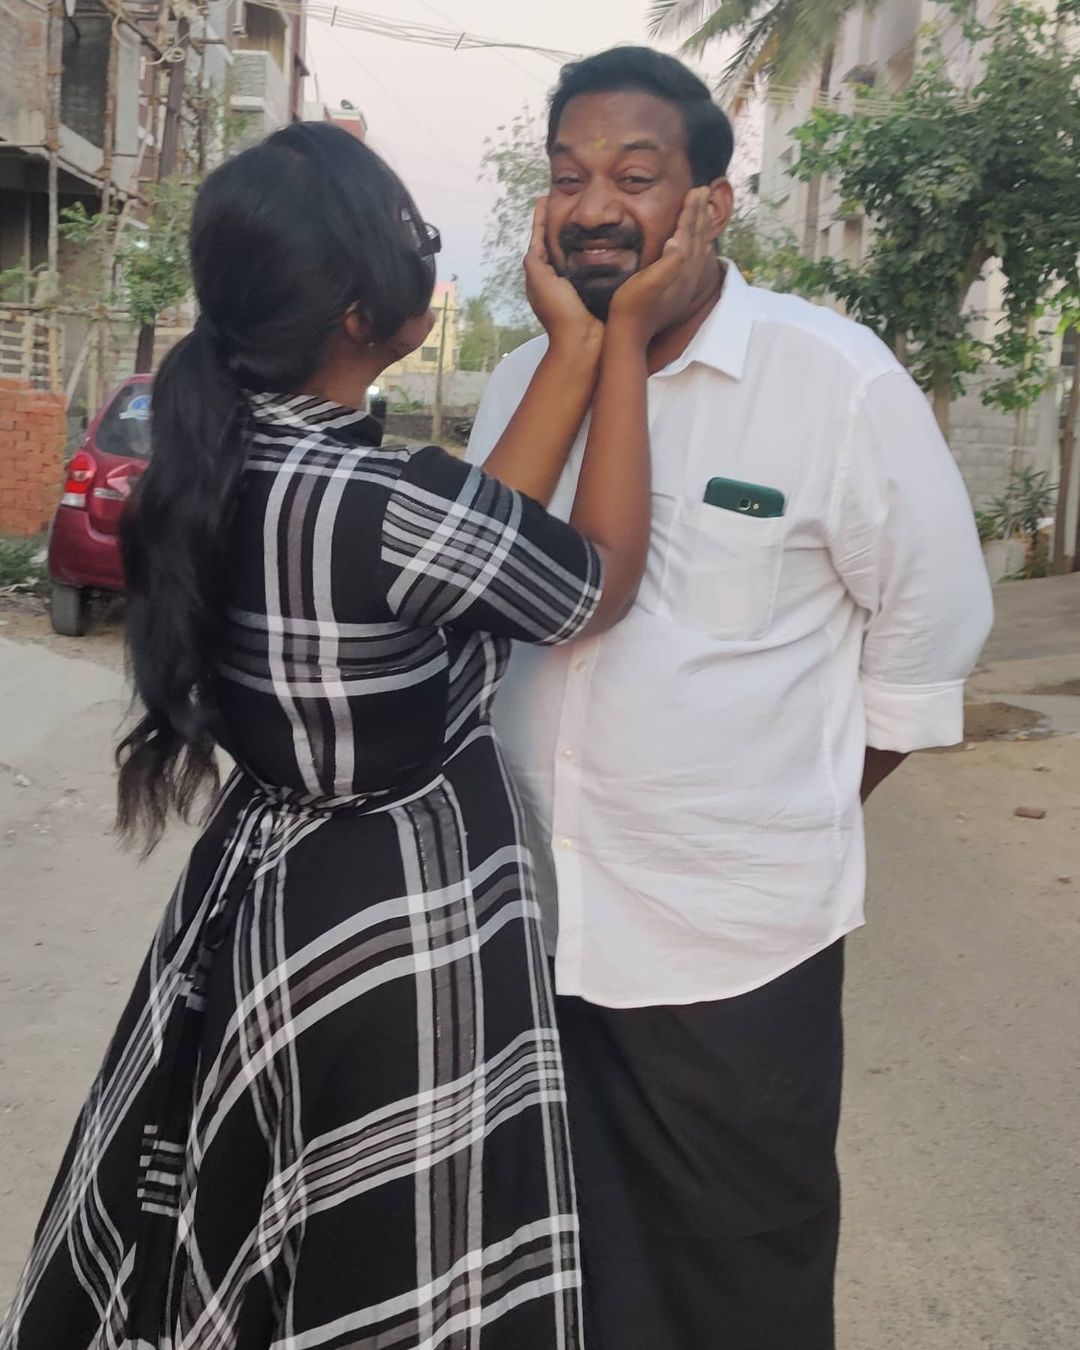 மகள் முன்பே மனைவிக்கு உதட்டில் முத்தமிட்ட ரோபோ ஷங்கர்! வைரலாகும் வீடியோ! Robo Shankar Kisses His Wife Viral Video 2